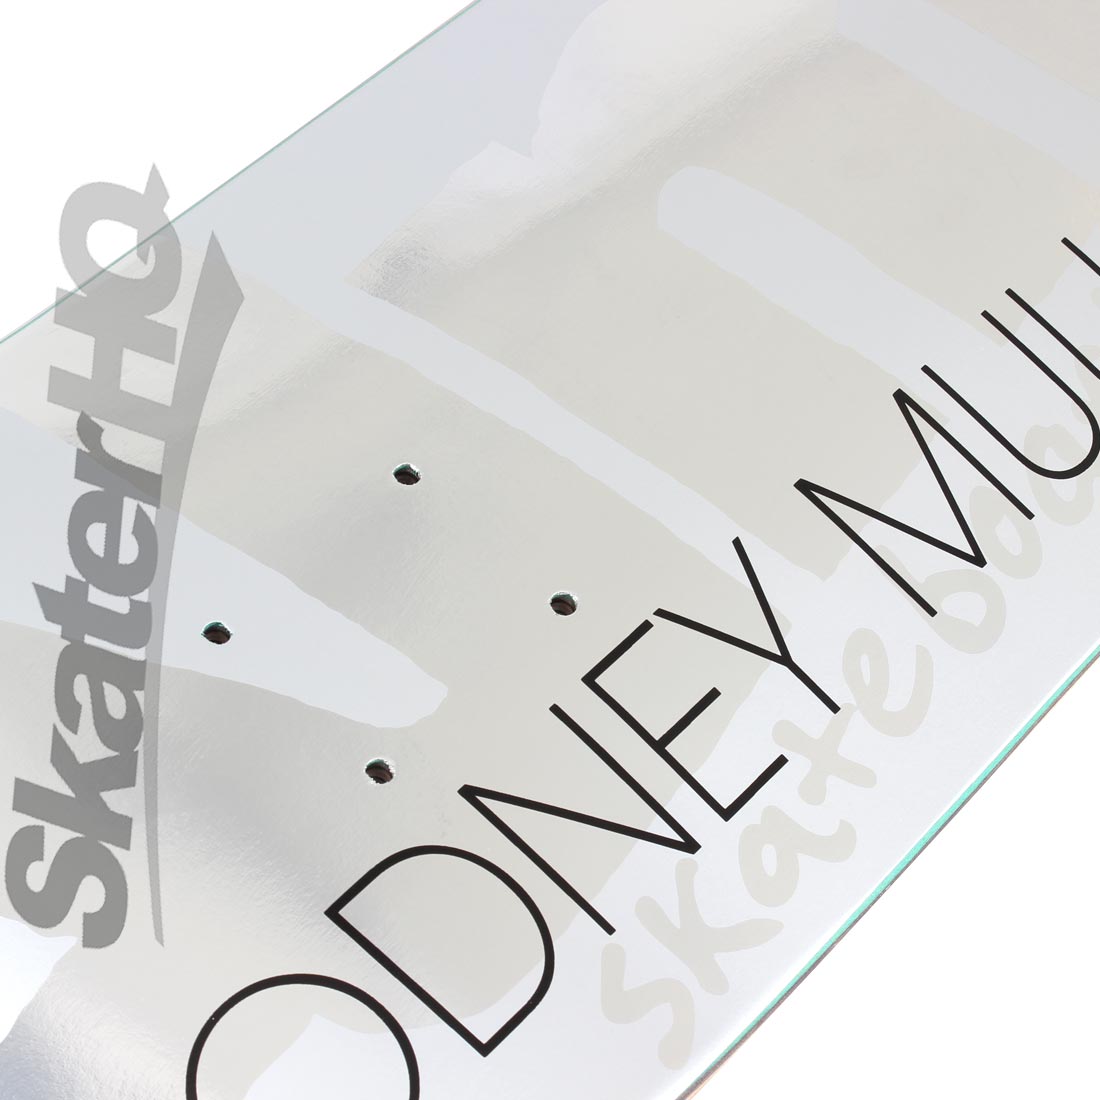 Almost Mullen Uber Silver Ops 8.0 Deck Skateboard Decks Modern Street